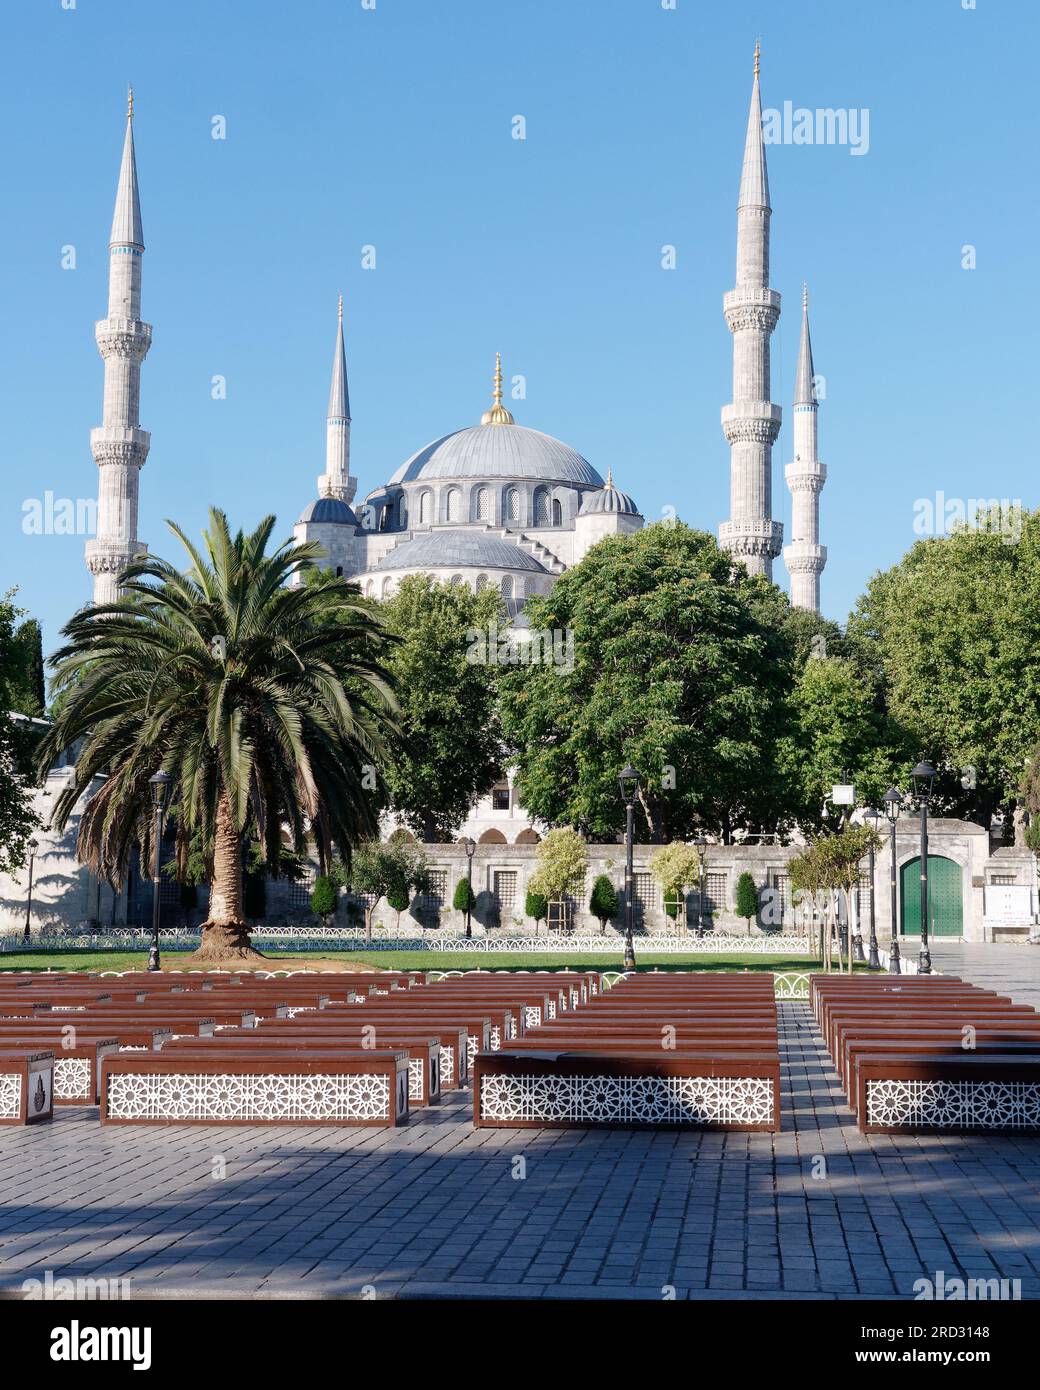 Moschea Sultan Ahmed, nota anche come Moschea Blu, nel Parco Sultanahmet, Istanbul, Turchia. Area pittoresca con alberi, giardino e panchine di legno. Foto Stock